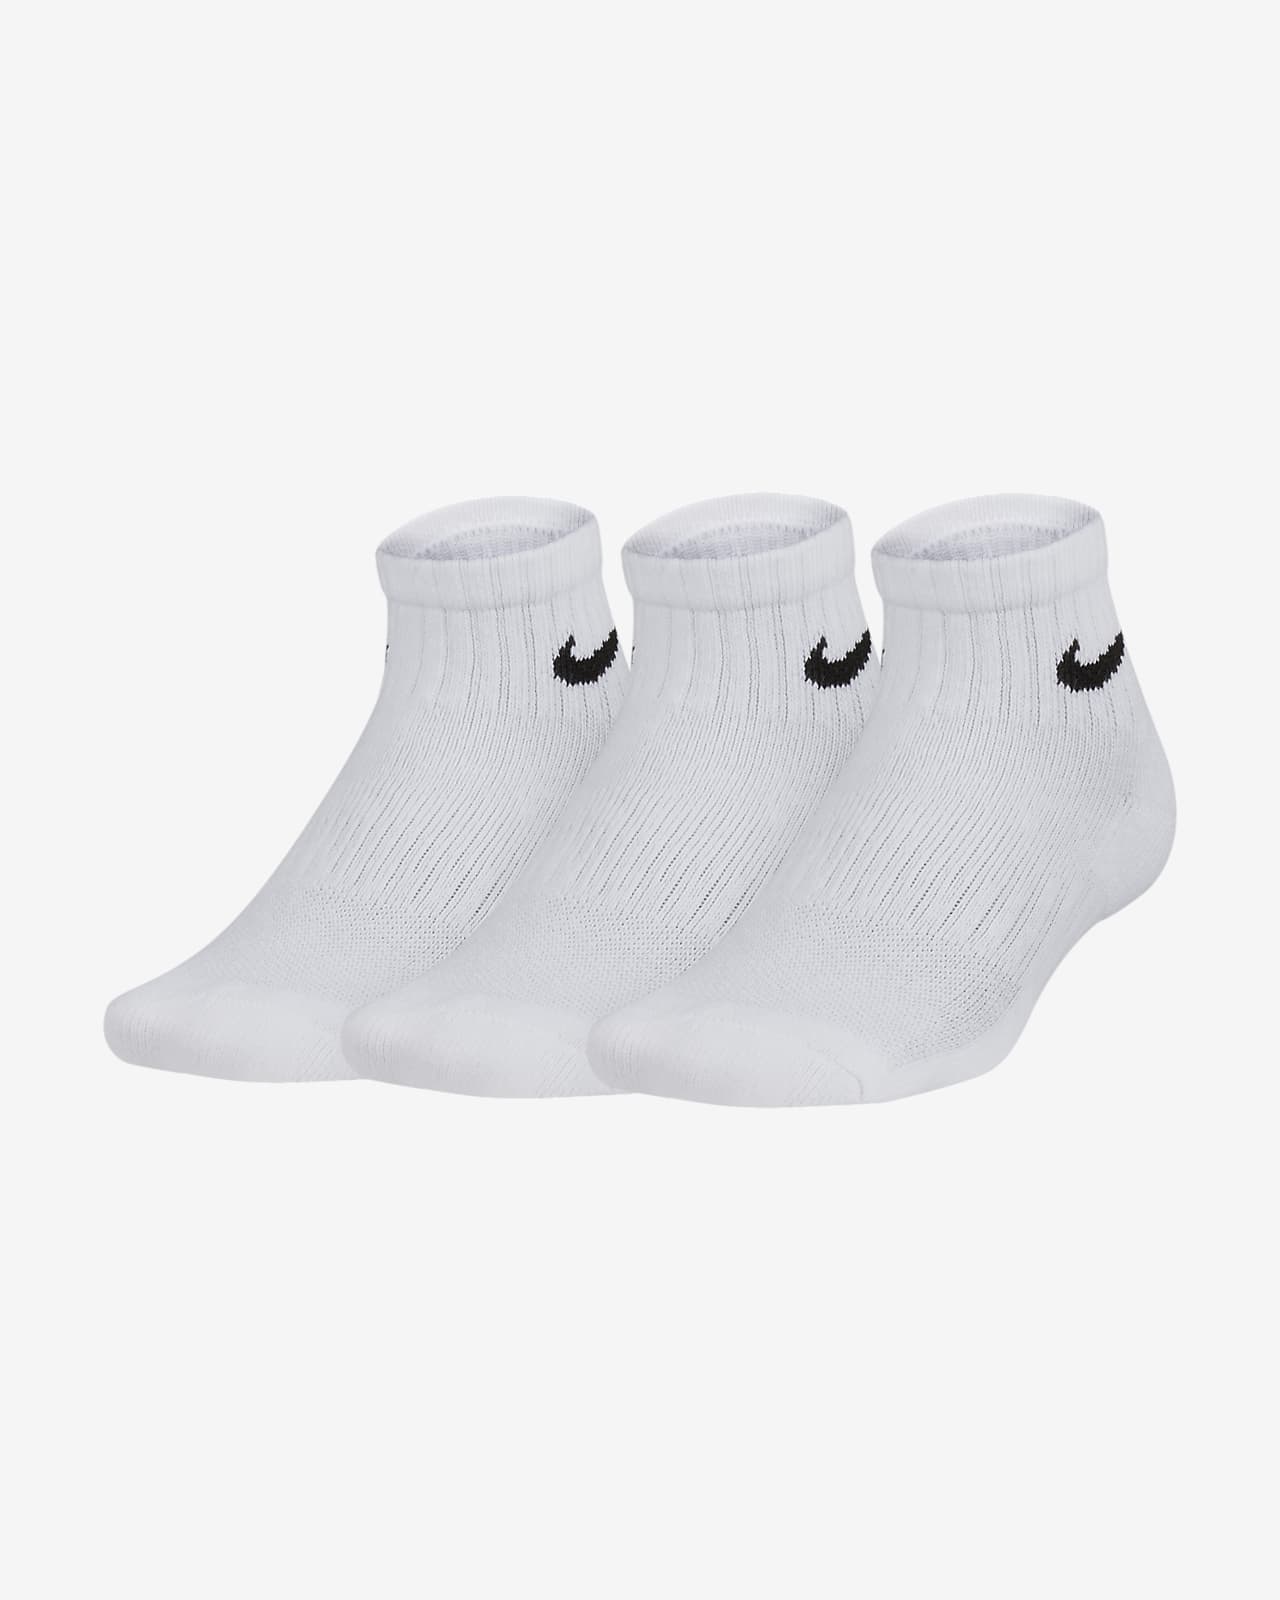 big pack of white nike socks